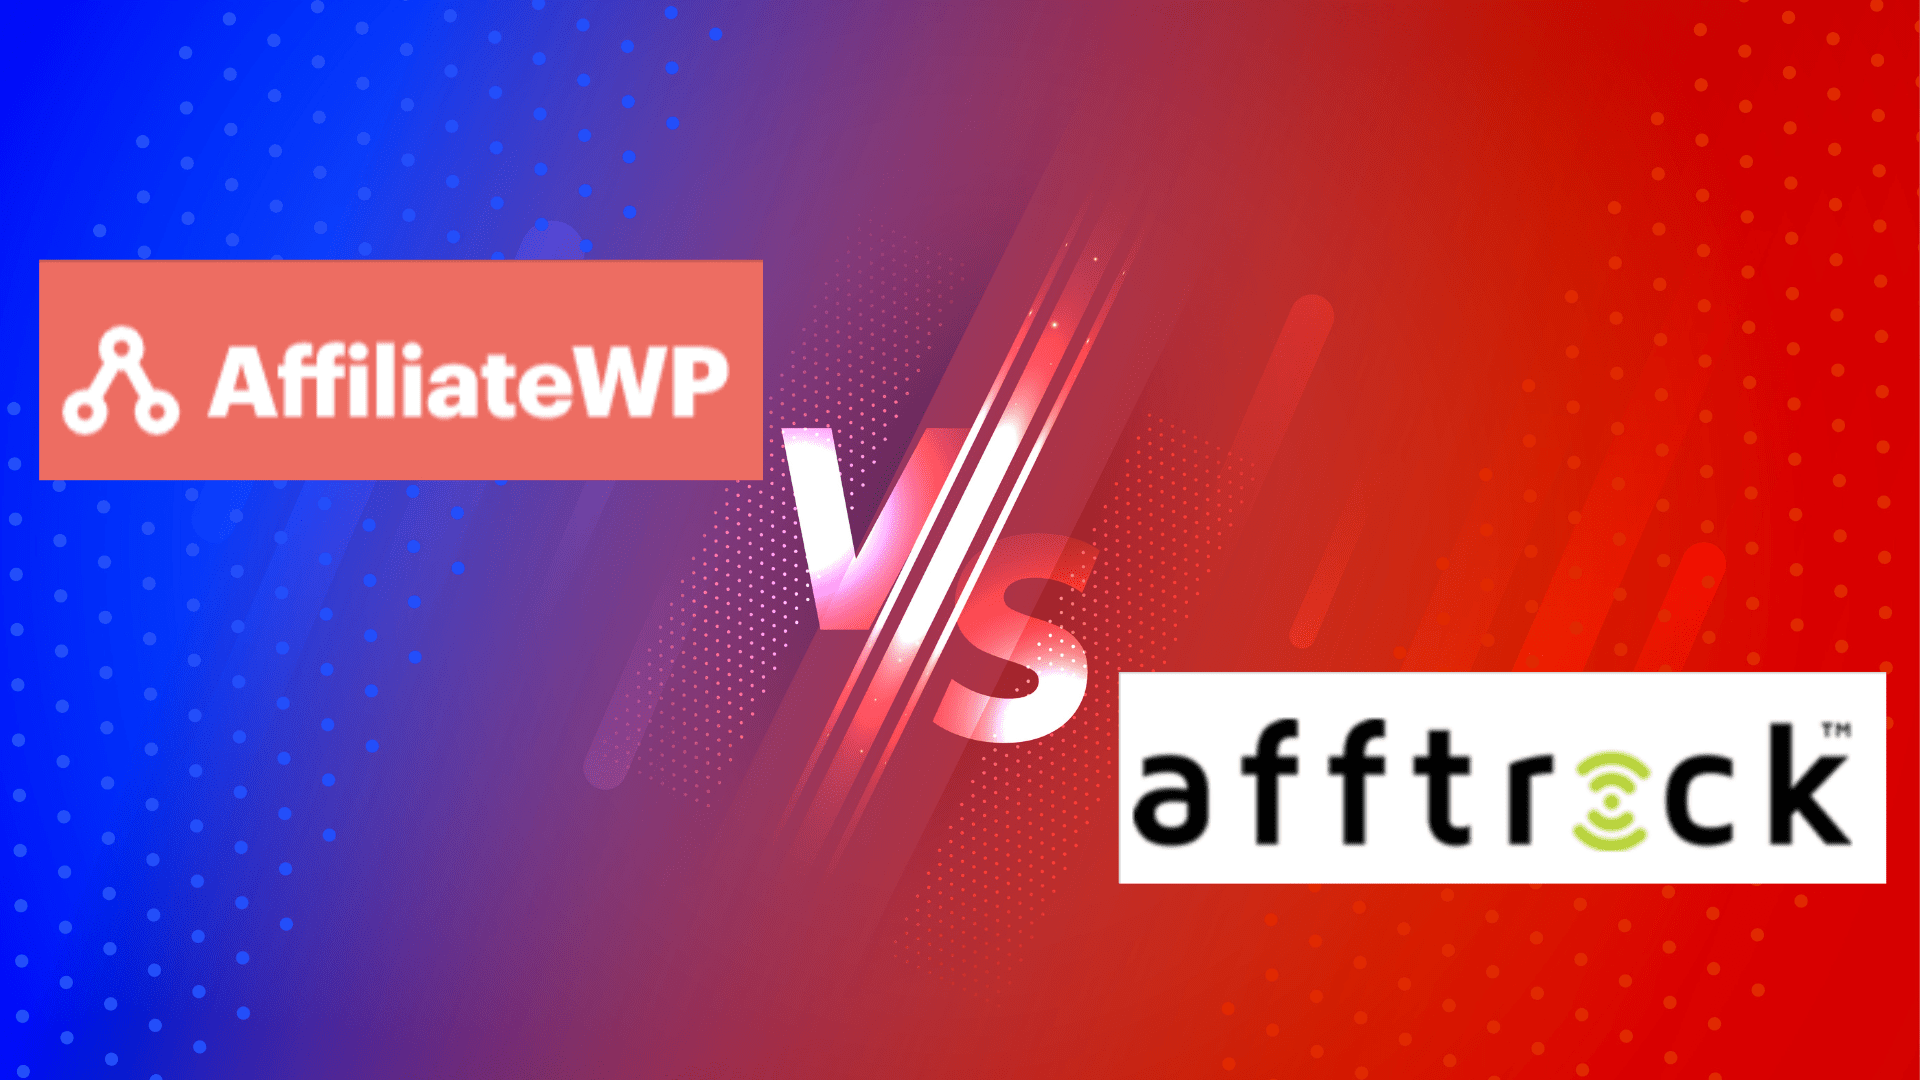 AffiliateWP vs AffTrack